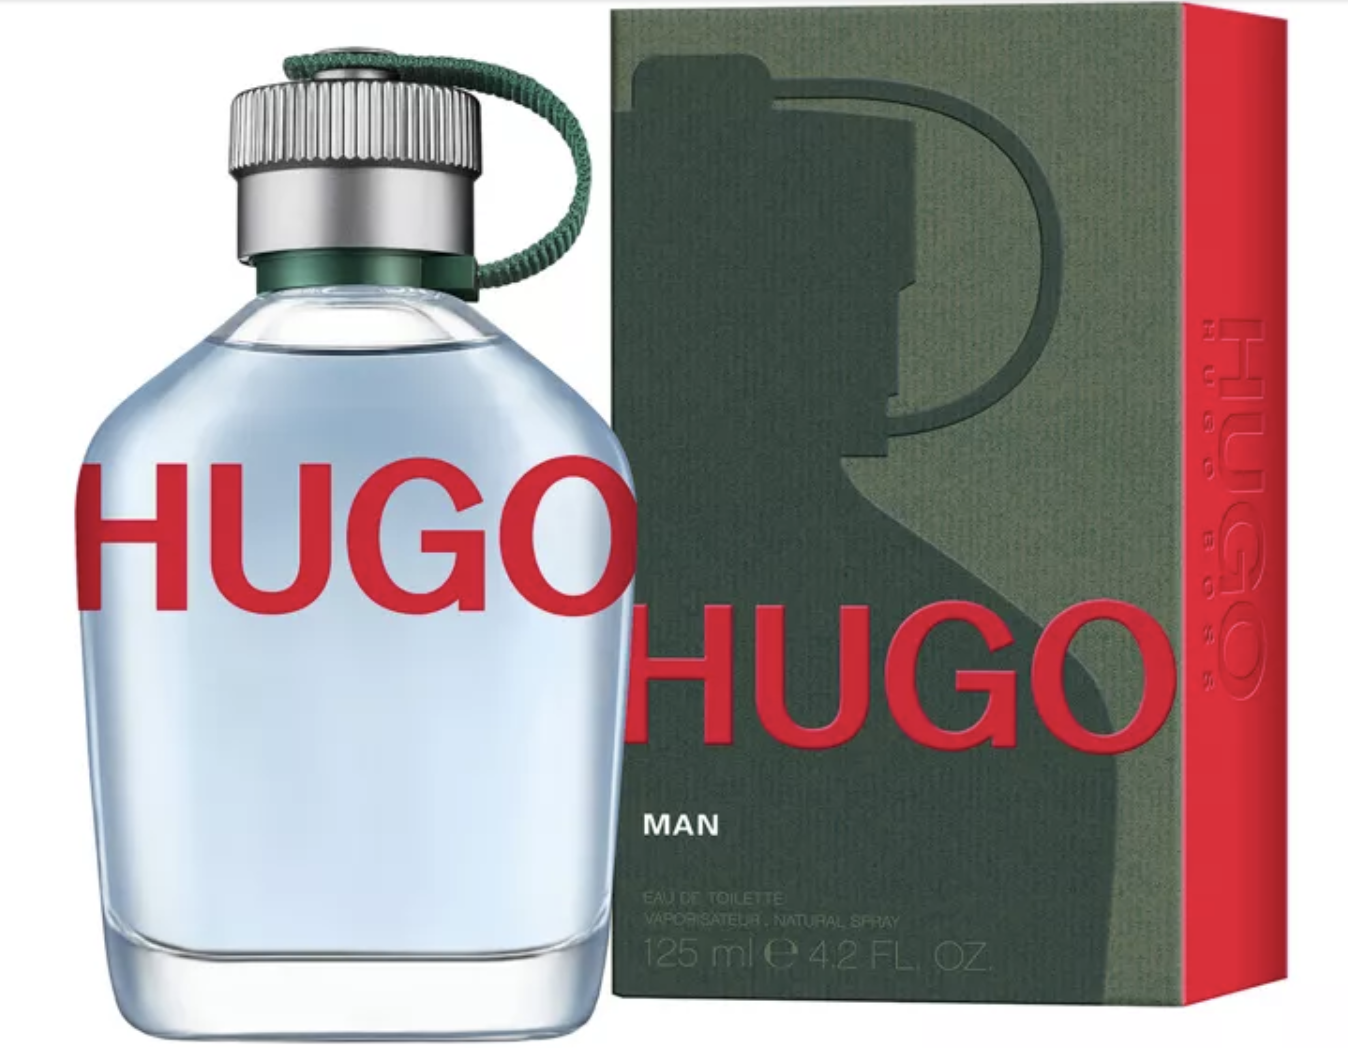 Hugo Boss Man Eau de Toilette, Cologne for Men, 4.2 oz - image 2 of 3